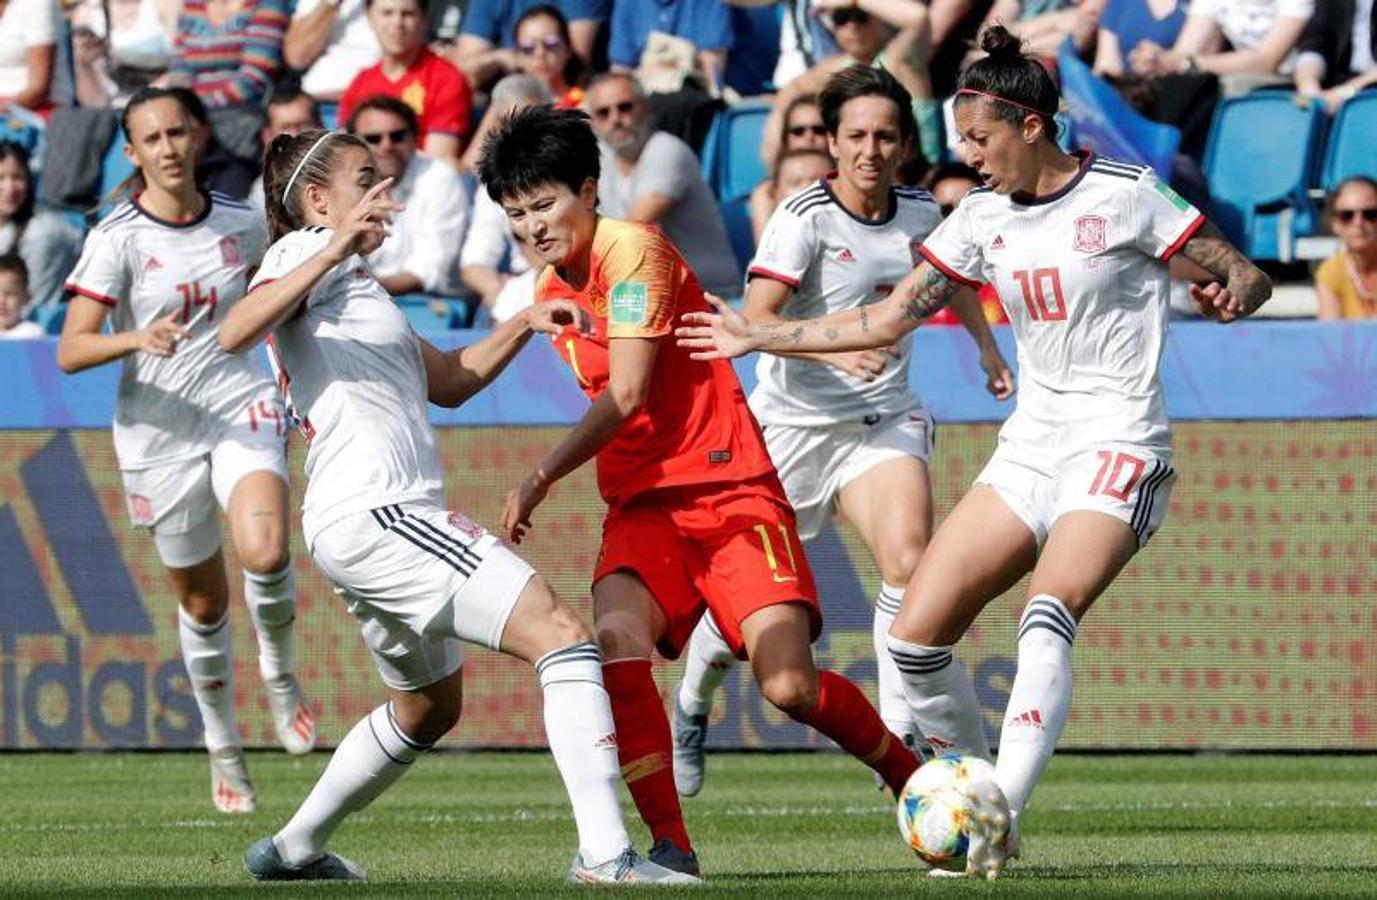 Tercer y último partido del grupo B donde las de Jorge Vilda se juegan el pase a los octavos de final. España domina ante una China combativa al ecuador de la primera parte. 